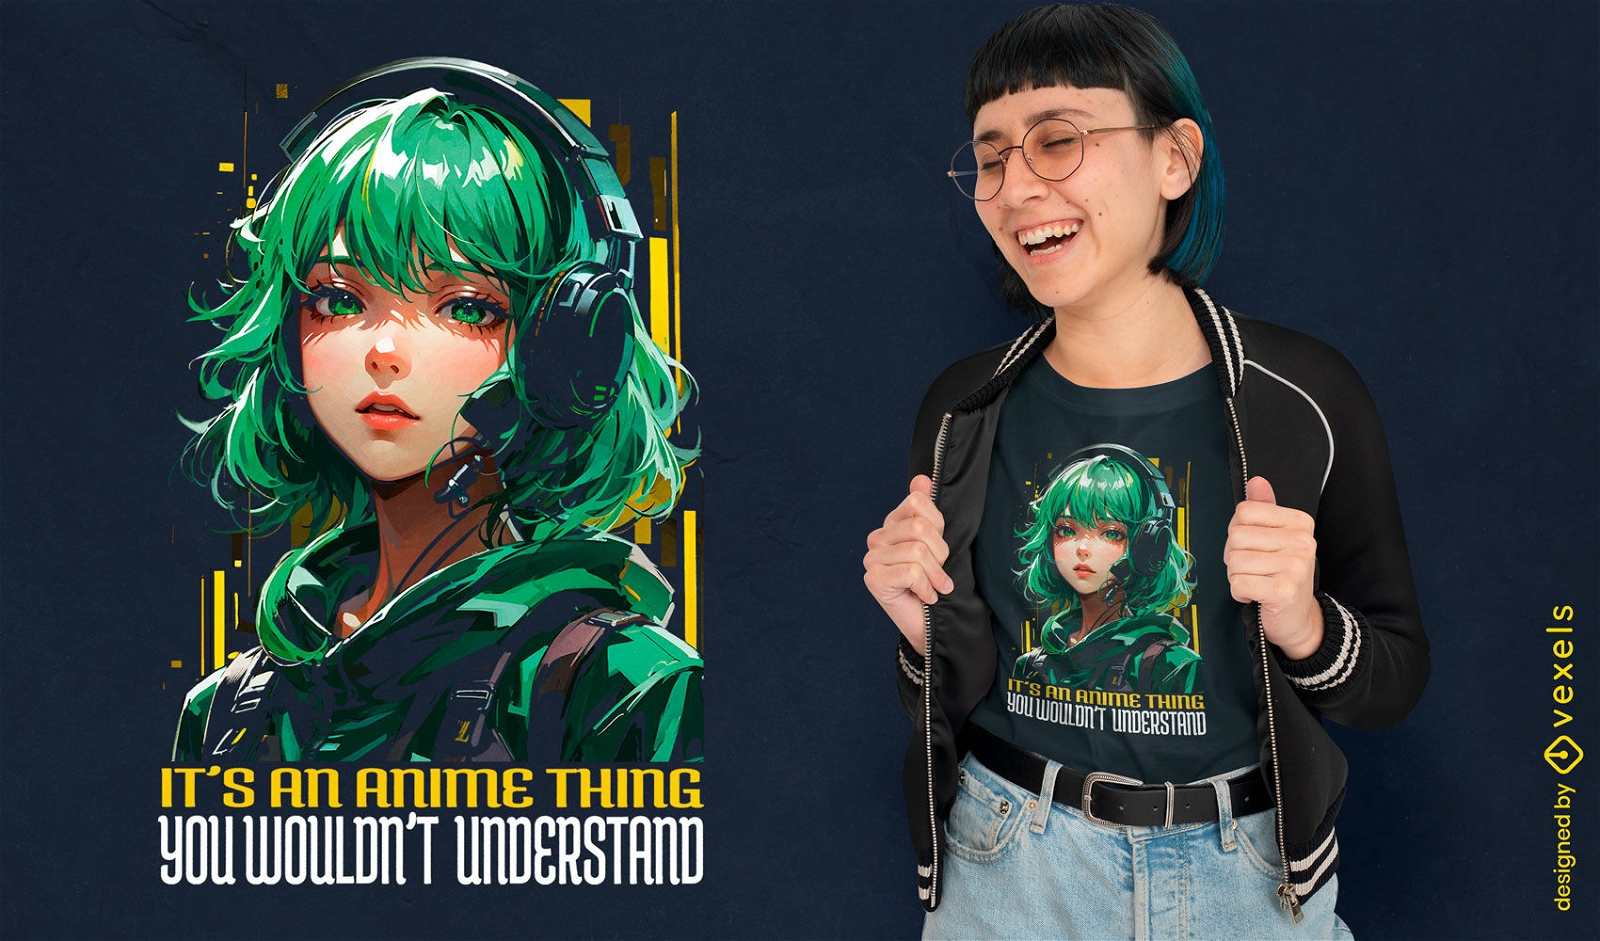 Anime-inspiriertes M?dchen-T-Shirt-Design